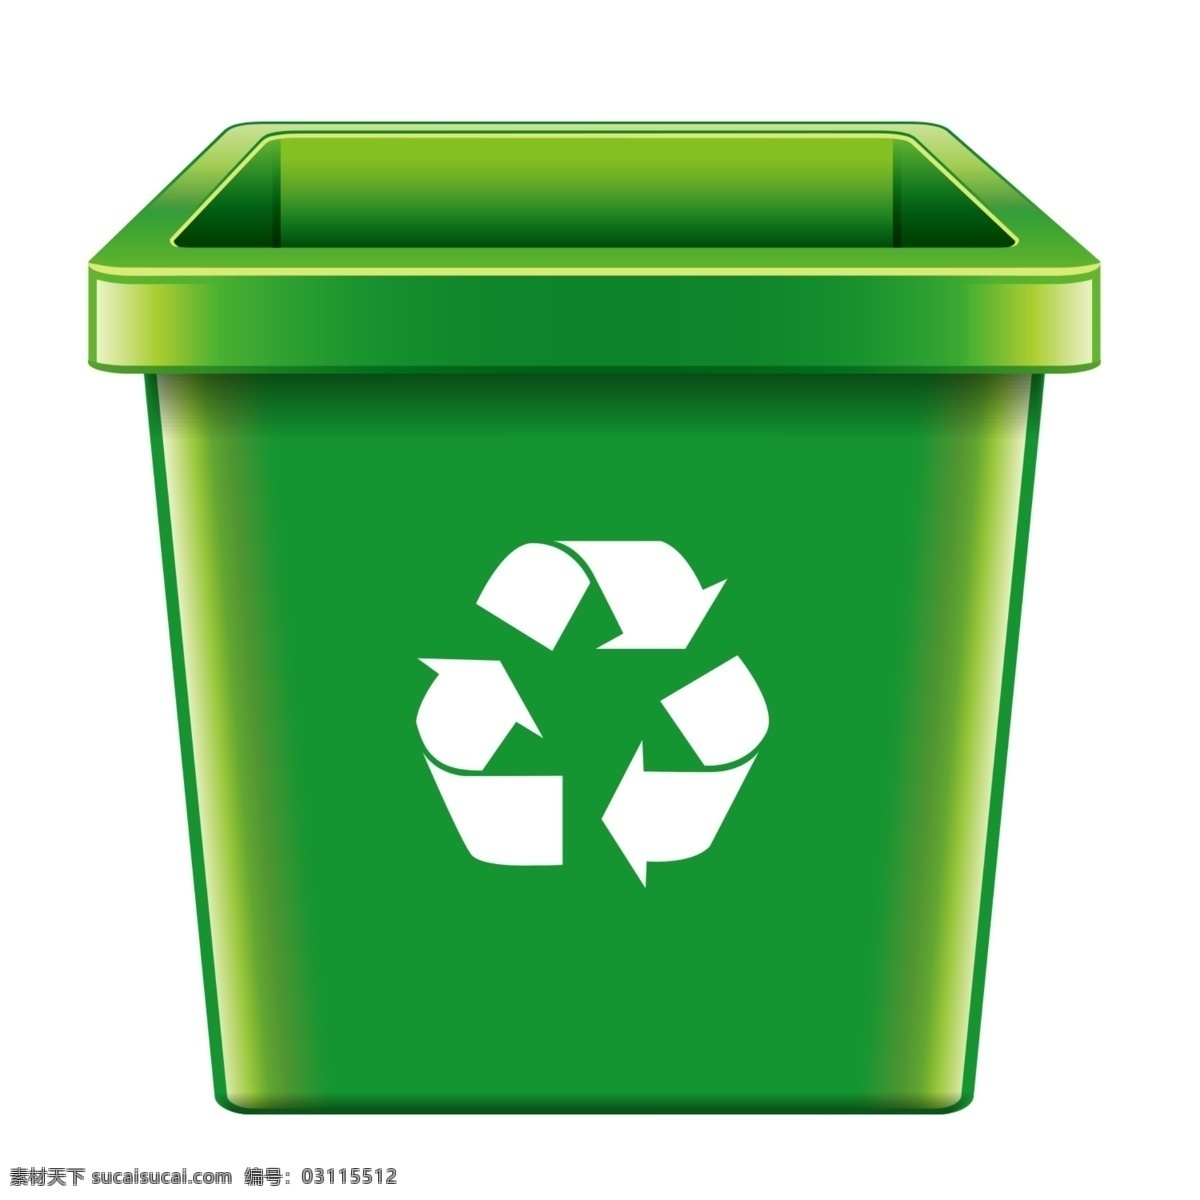 垃圾桶图片 低碳 环保 标志 垃圾桶 垃圾桶素材